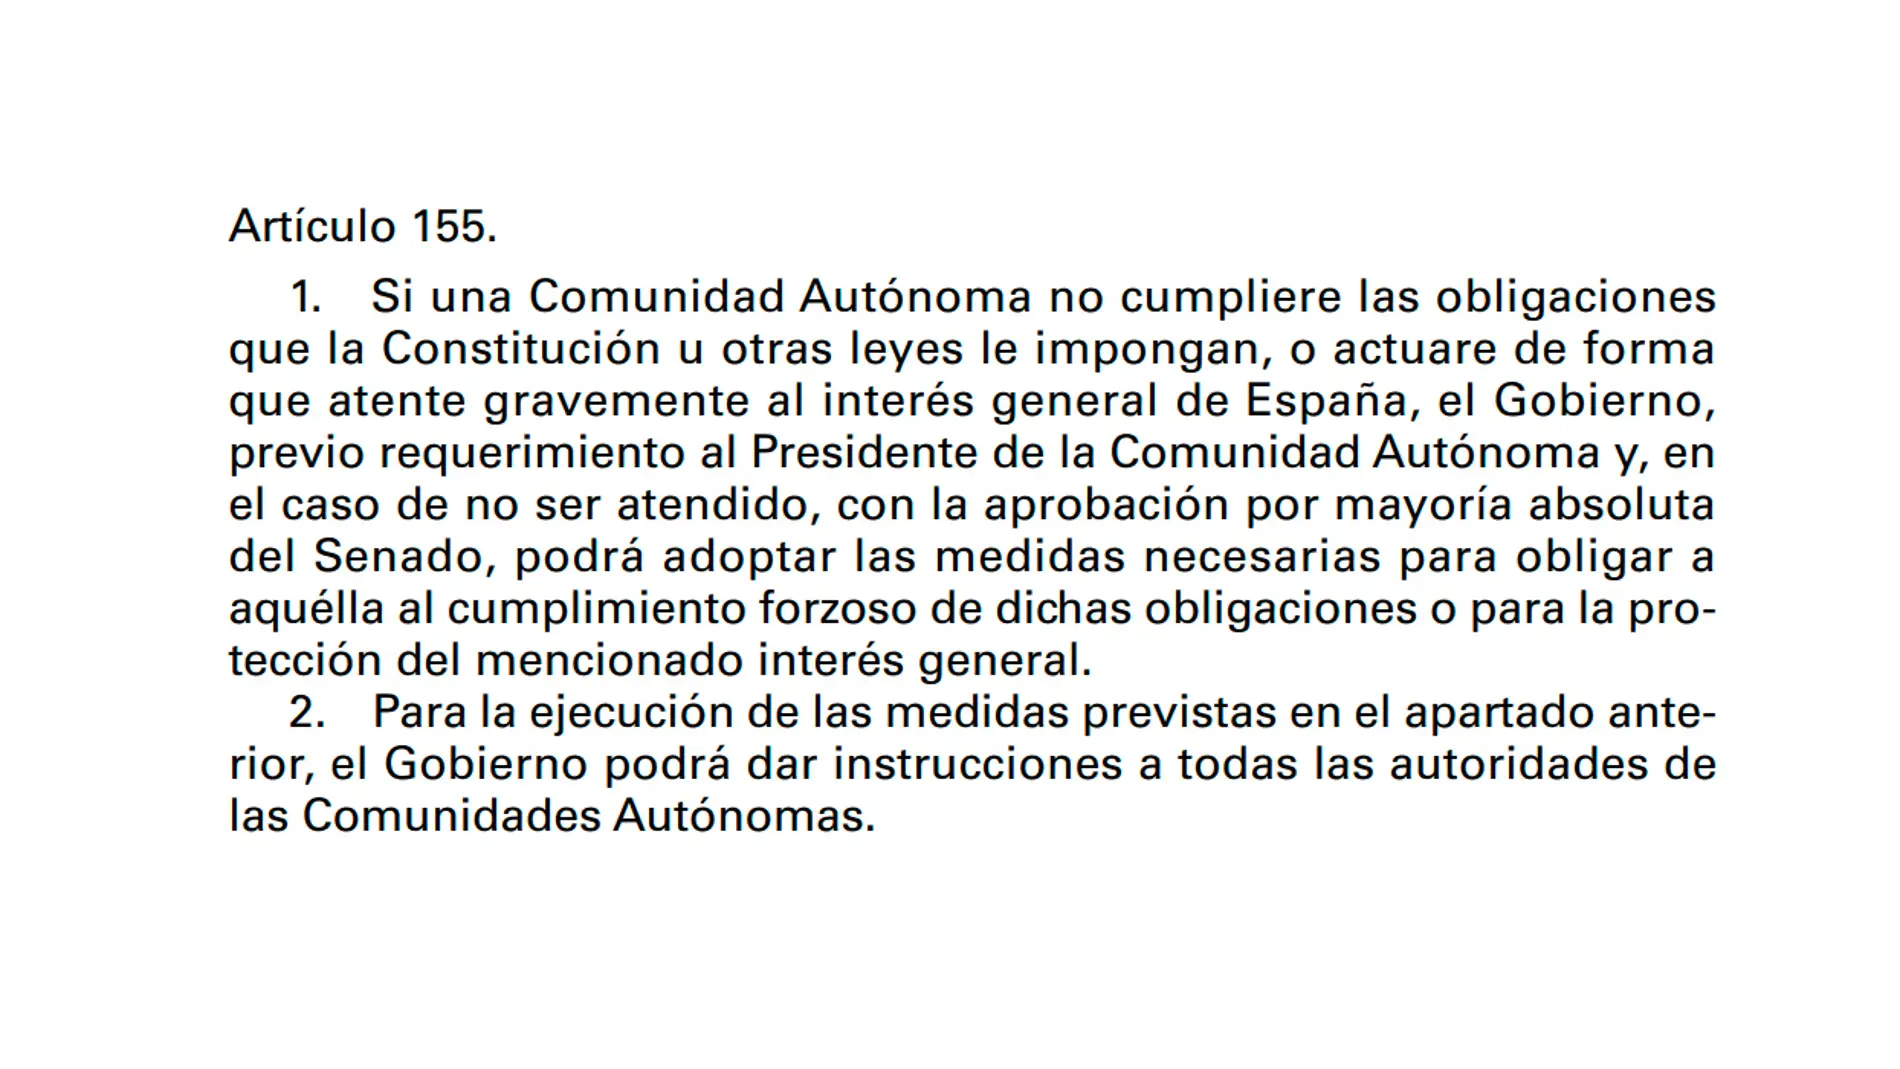 Artículo 155 de la Constitución Española